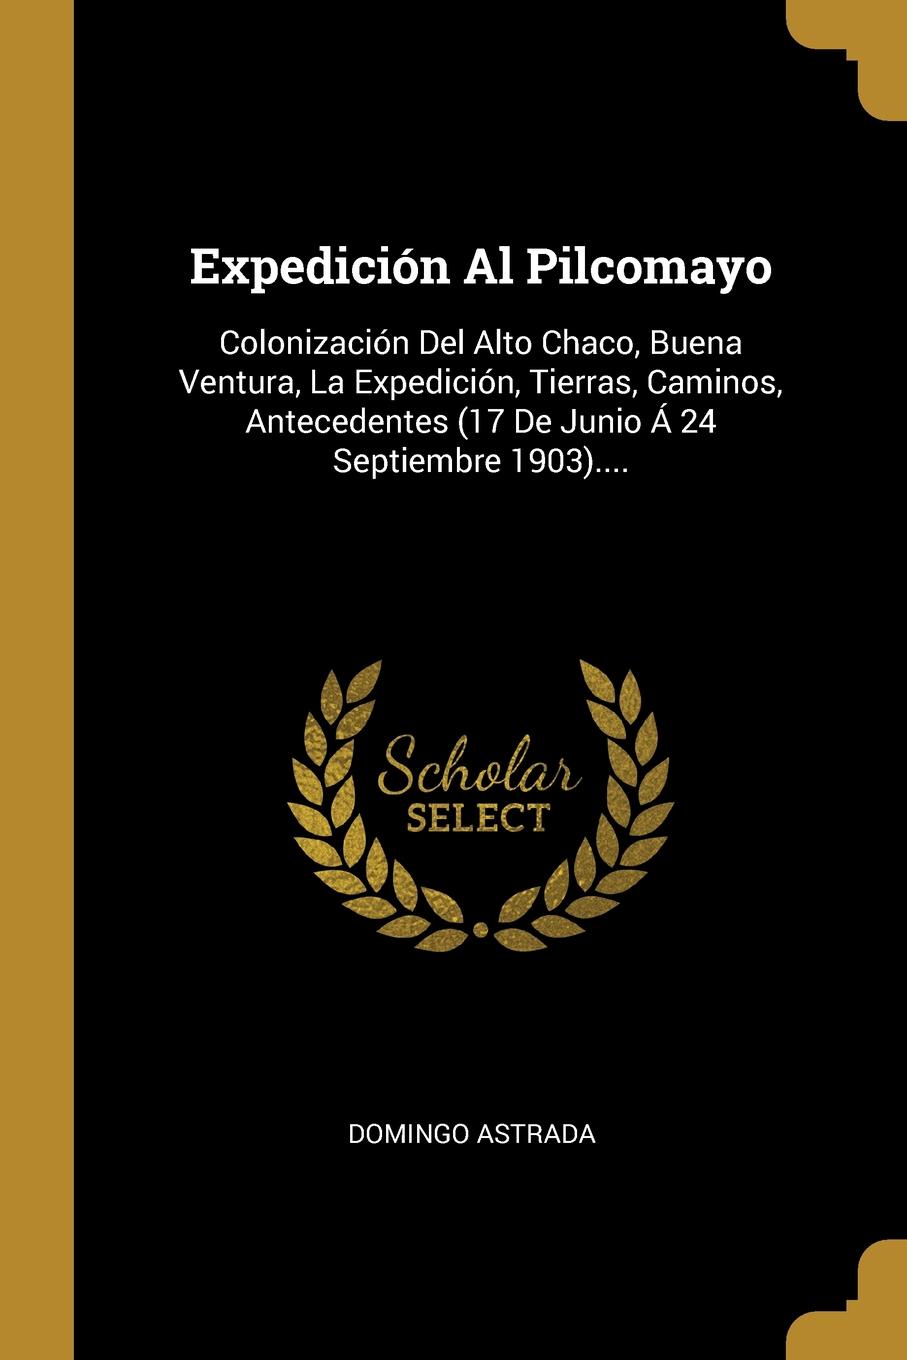 Expedicion Al Pilcomayo. Colonizacion Del Alto Chaco, Buena Ventura, La Expedicion, Tierras, Caminos, Antecedentes (17 De Junio A 24 Septiembre 1903)....